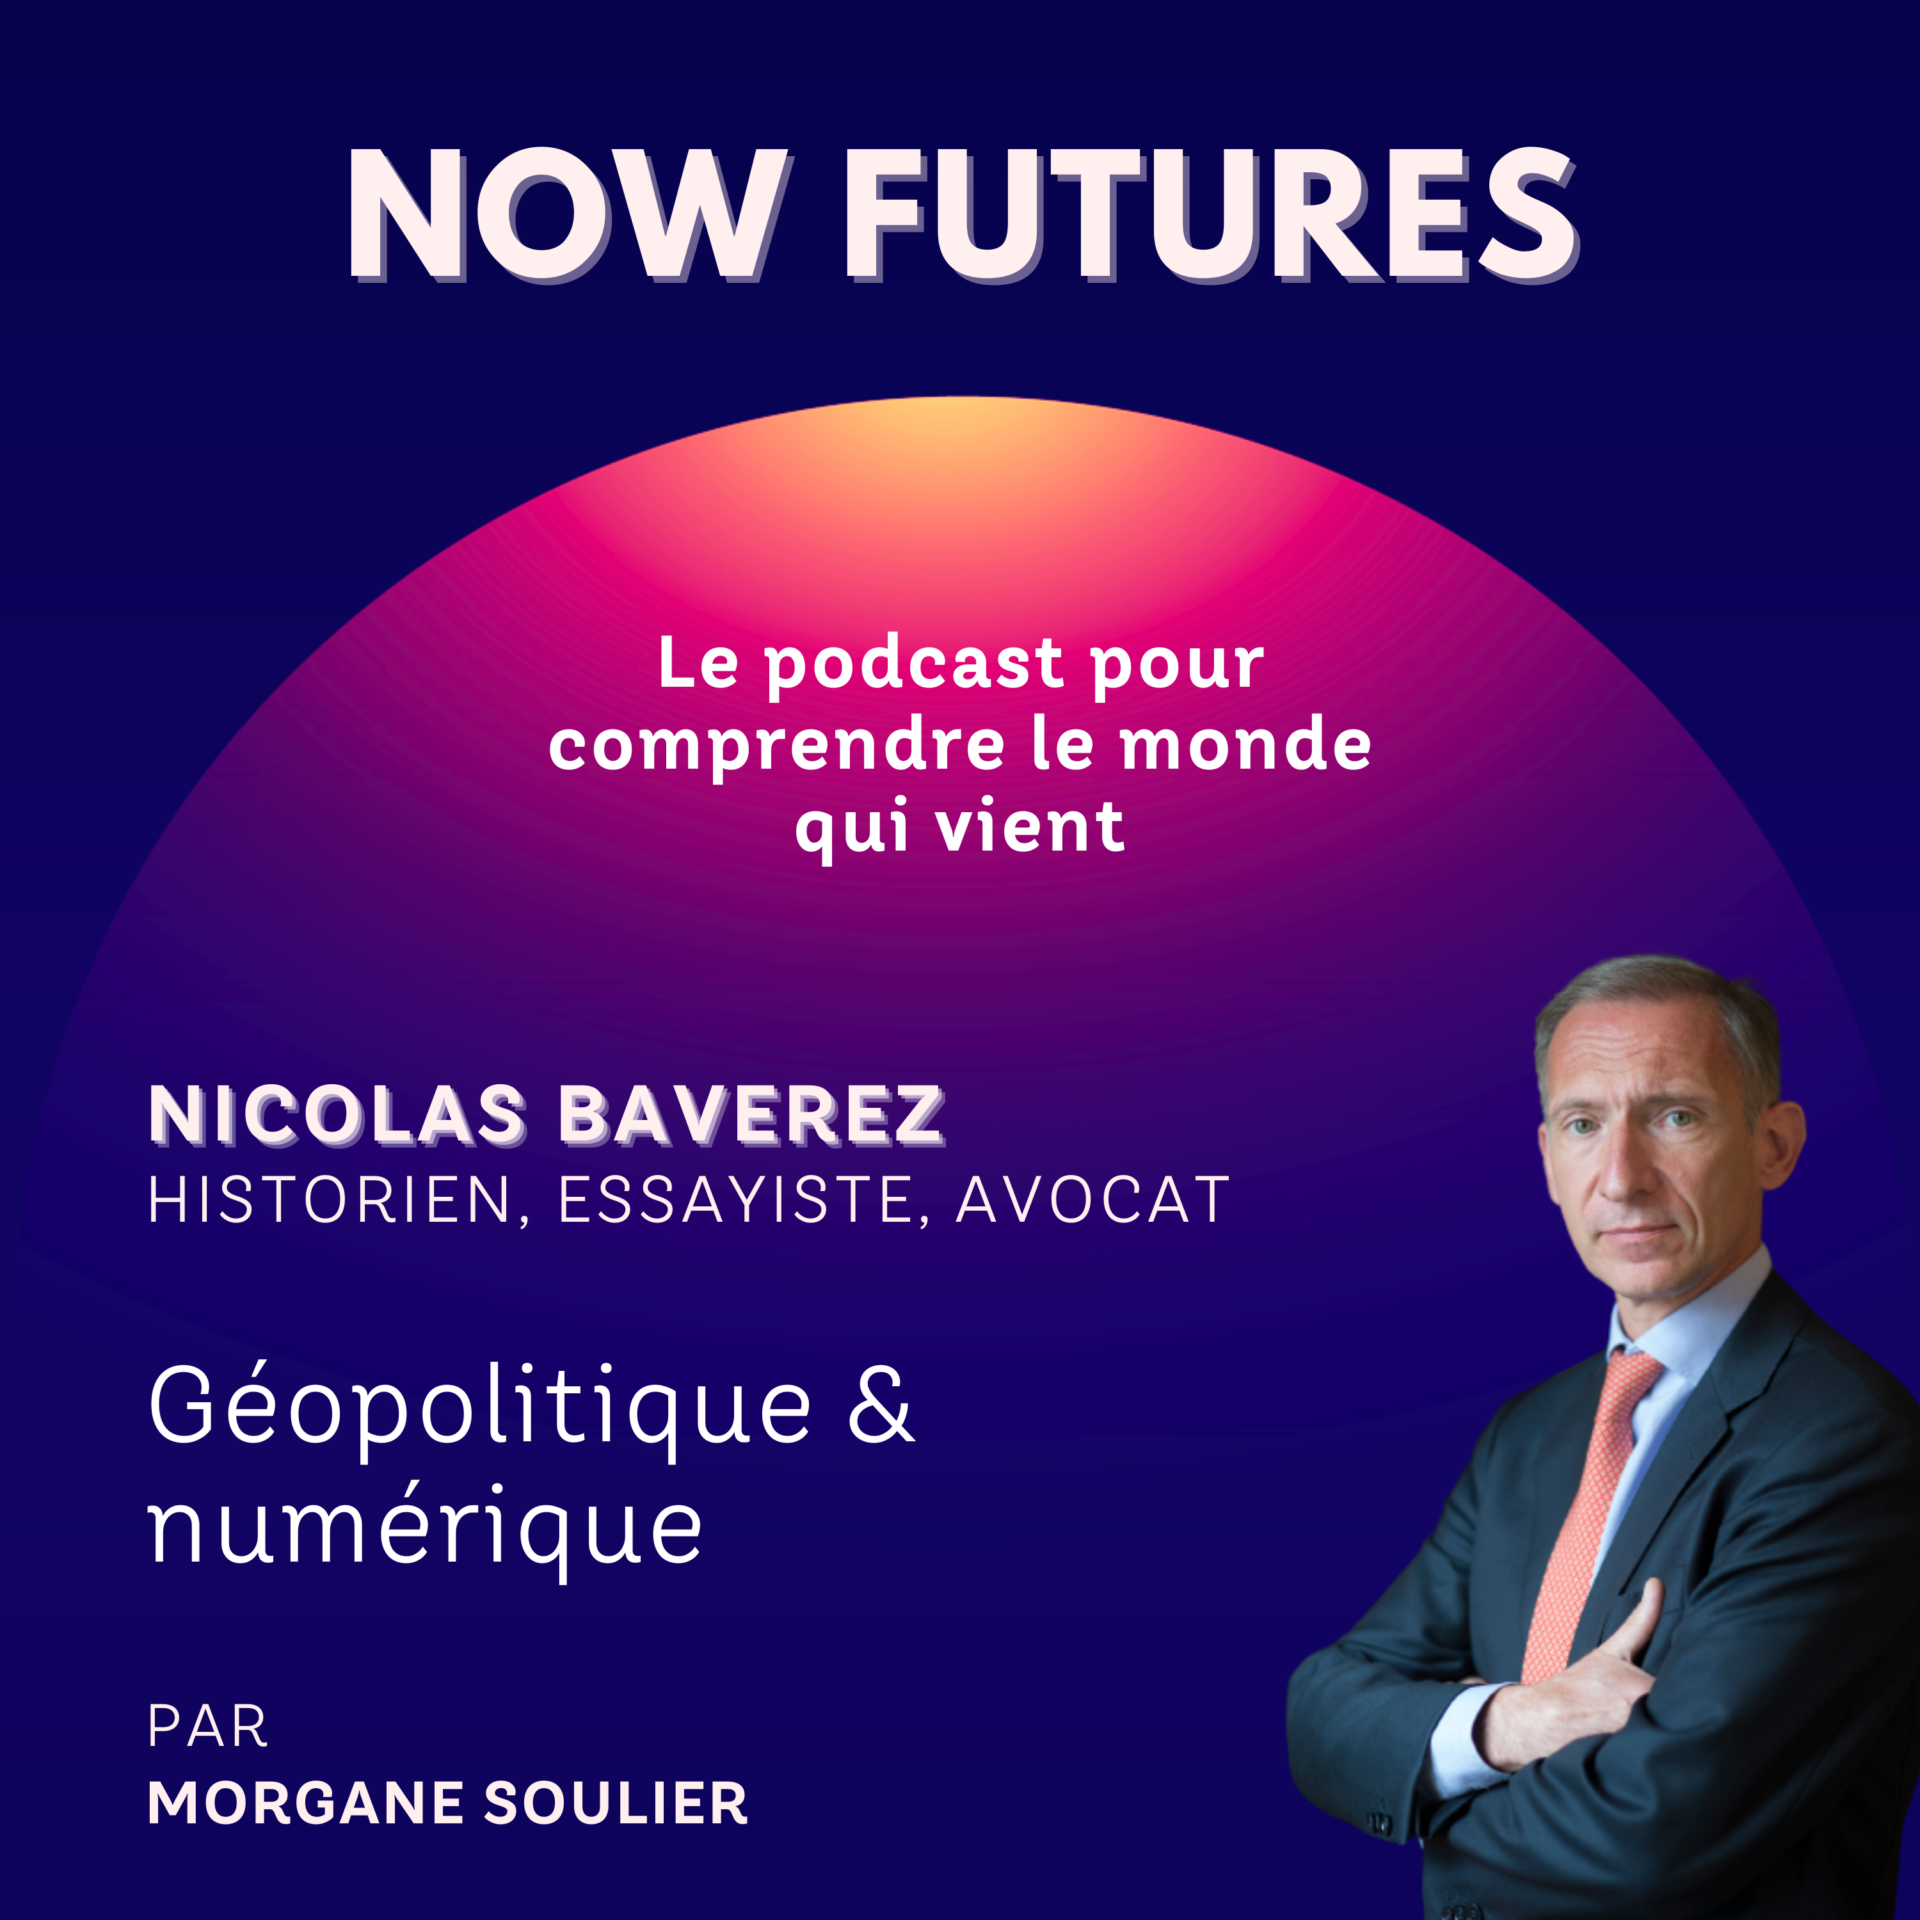 Géopolitique & numérique avec Nicolas Baverez